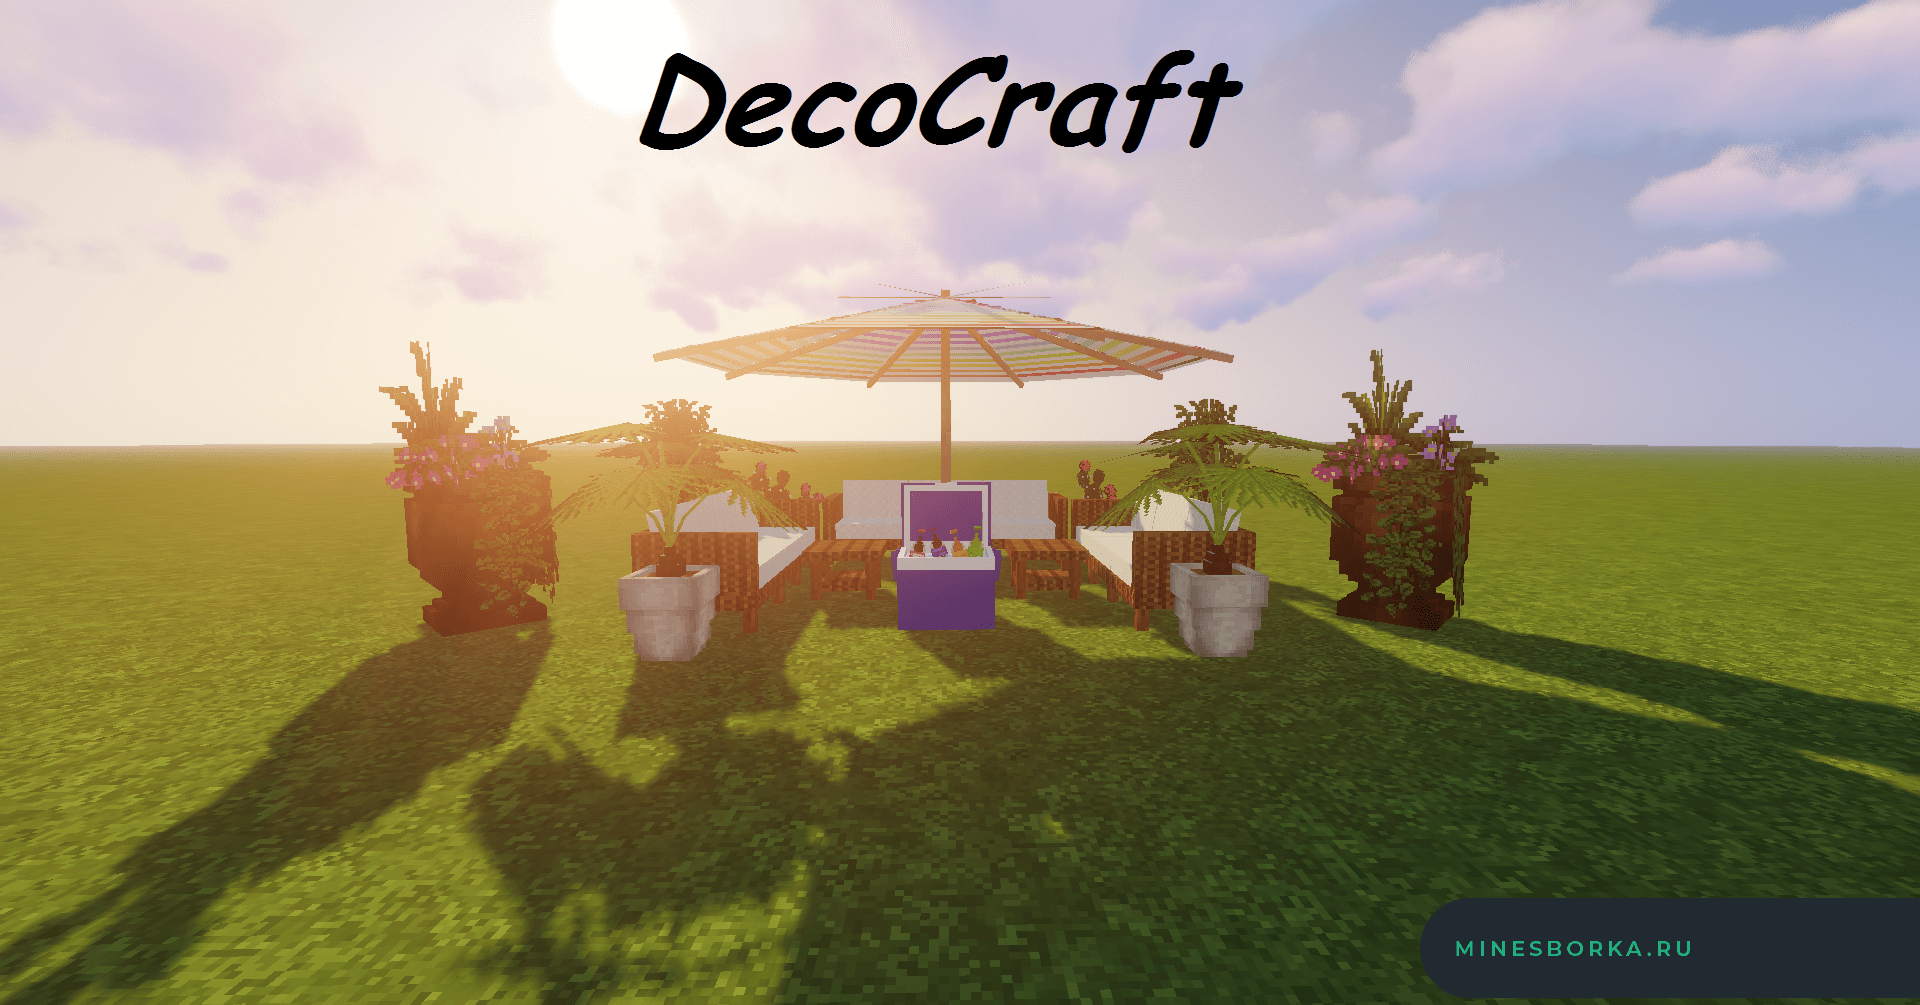 Скачать мод DecoCraft 1.8.9 - 1.12.2 | Мод на декоративные вещи для Майнкрафт